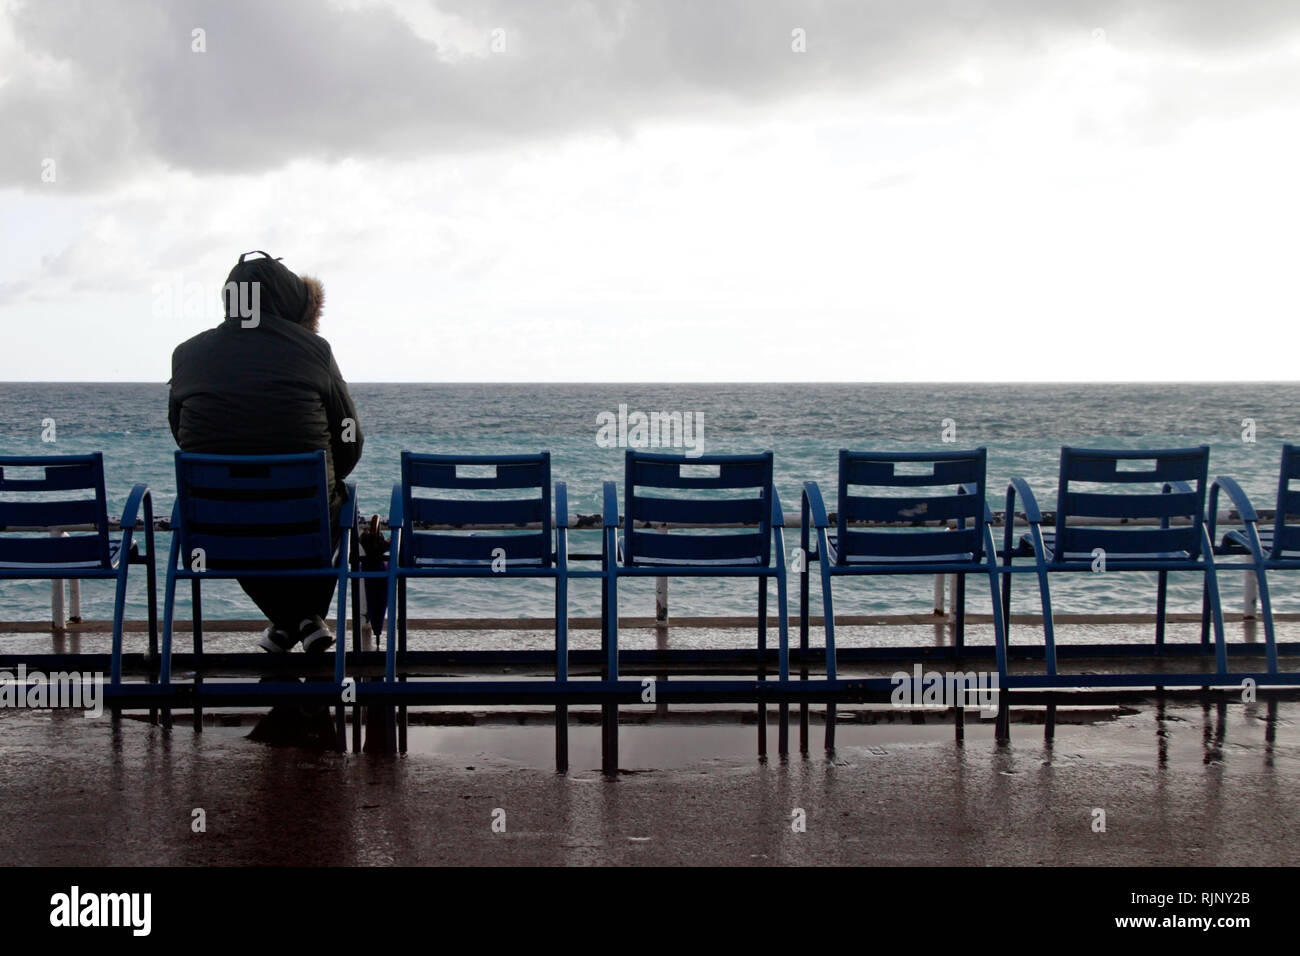 Lone personne assise sur une chaise au large de Nice, France Banque D'Images